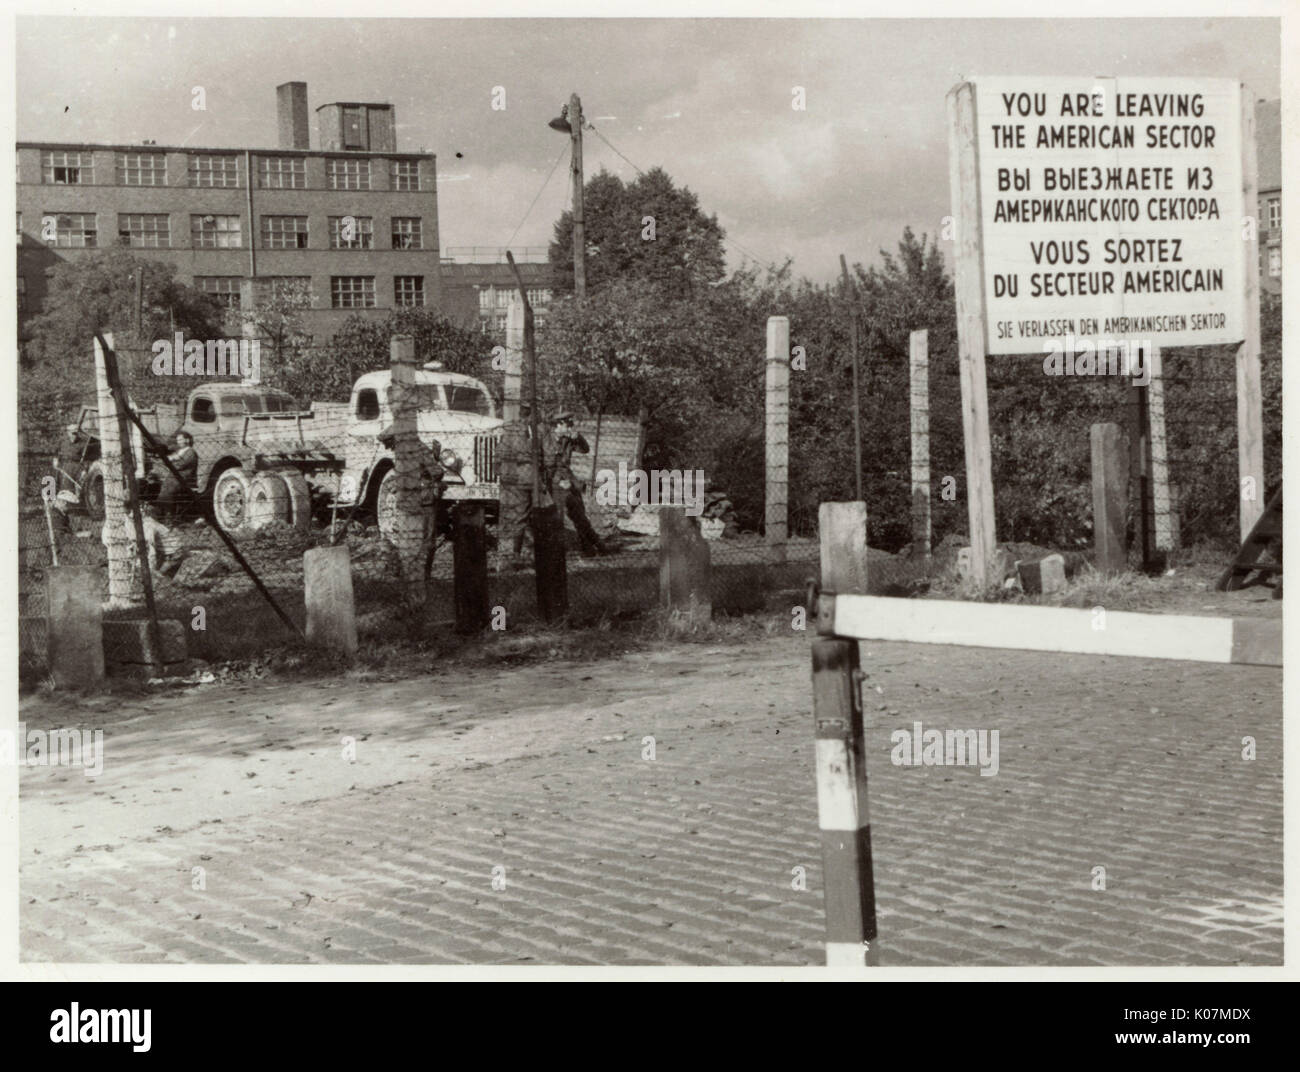 Berlin, Deutschland - Nachkriegszeit - Zeichen Warnung, dass "sie den amerikanischen Sektor" verlassen. Datum: ca. 1947 Stockfoto